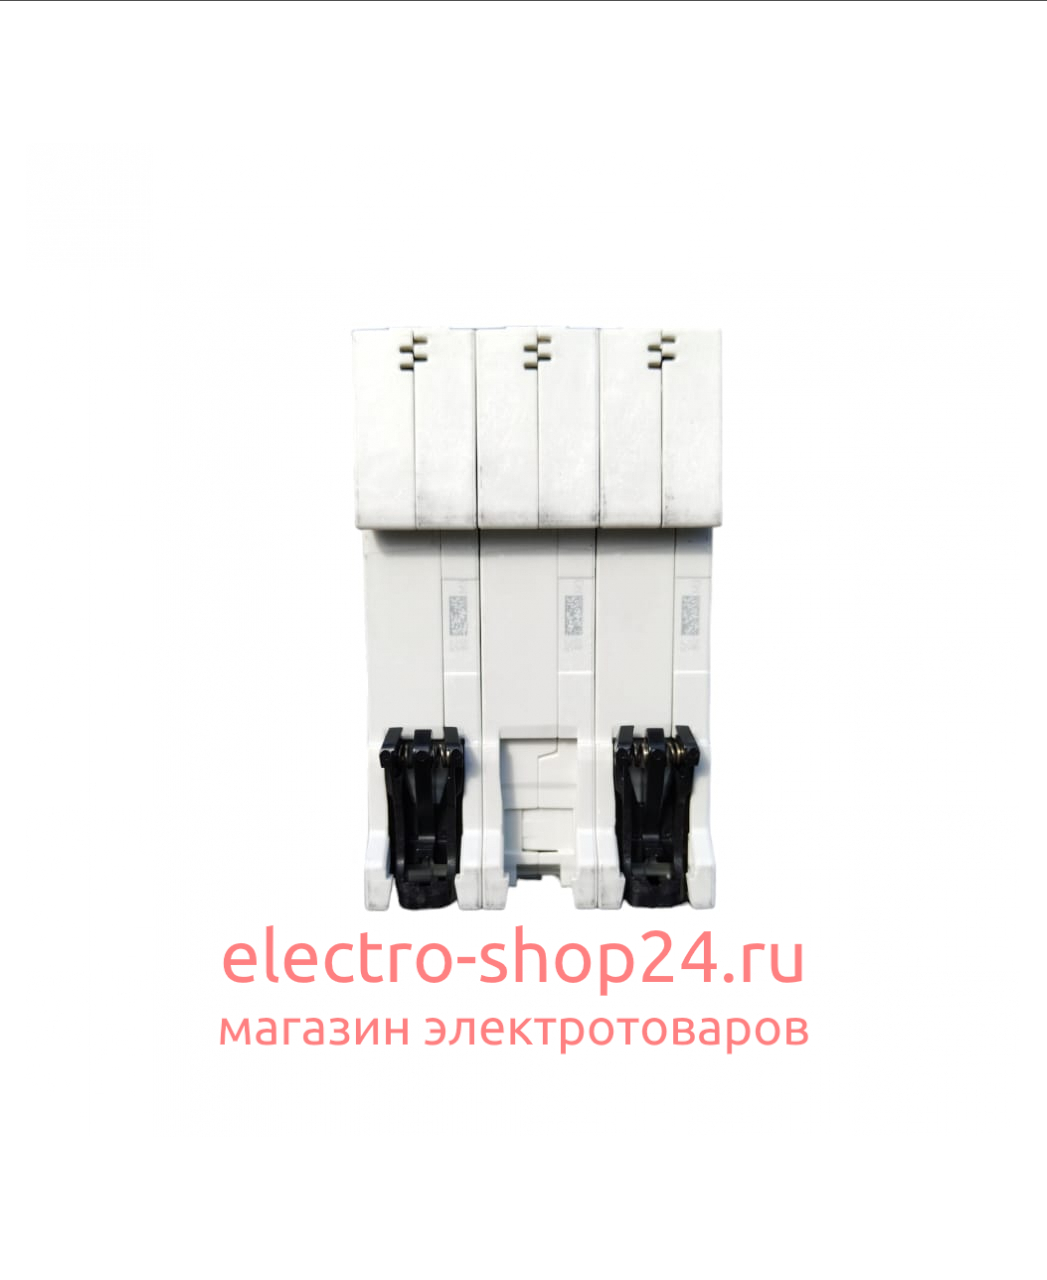 S203 C10 Автоматический выключатель 3-полюсный 10А 6кА (хар-ка C) ABB 2CDS253001R0104 2CDS253001R0104 - магазин электротехники Electroshop